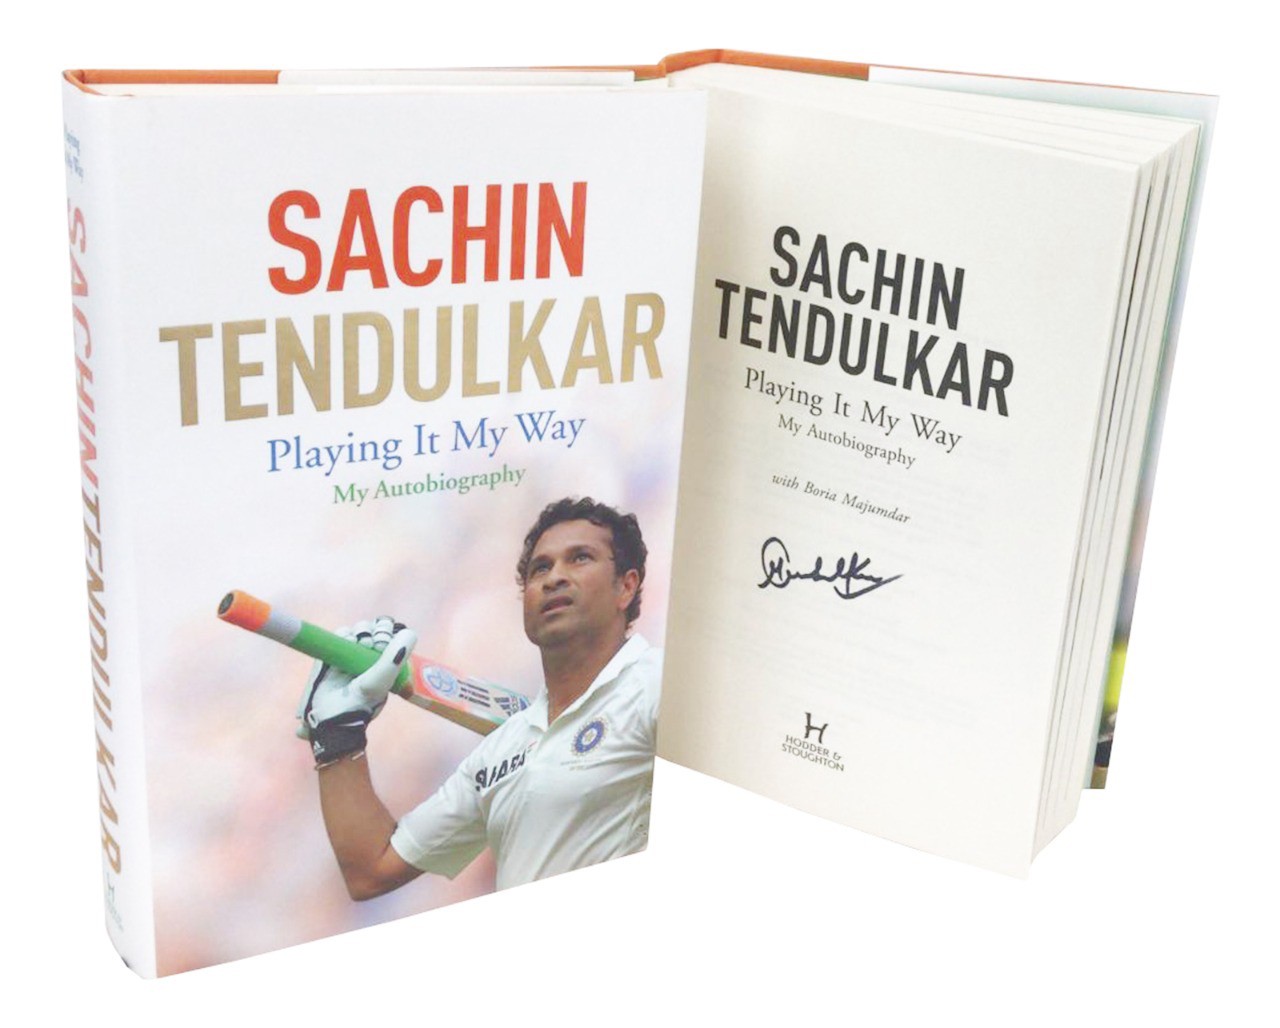 book review of sachin tendulkar autobiography